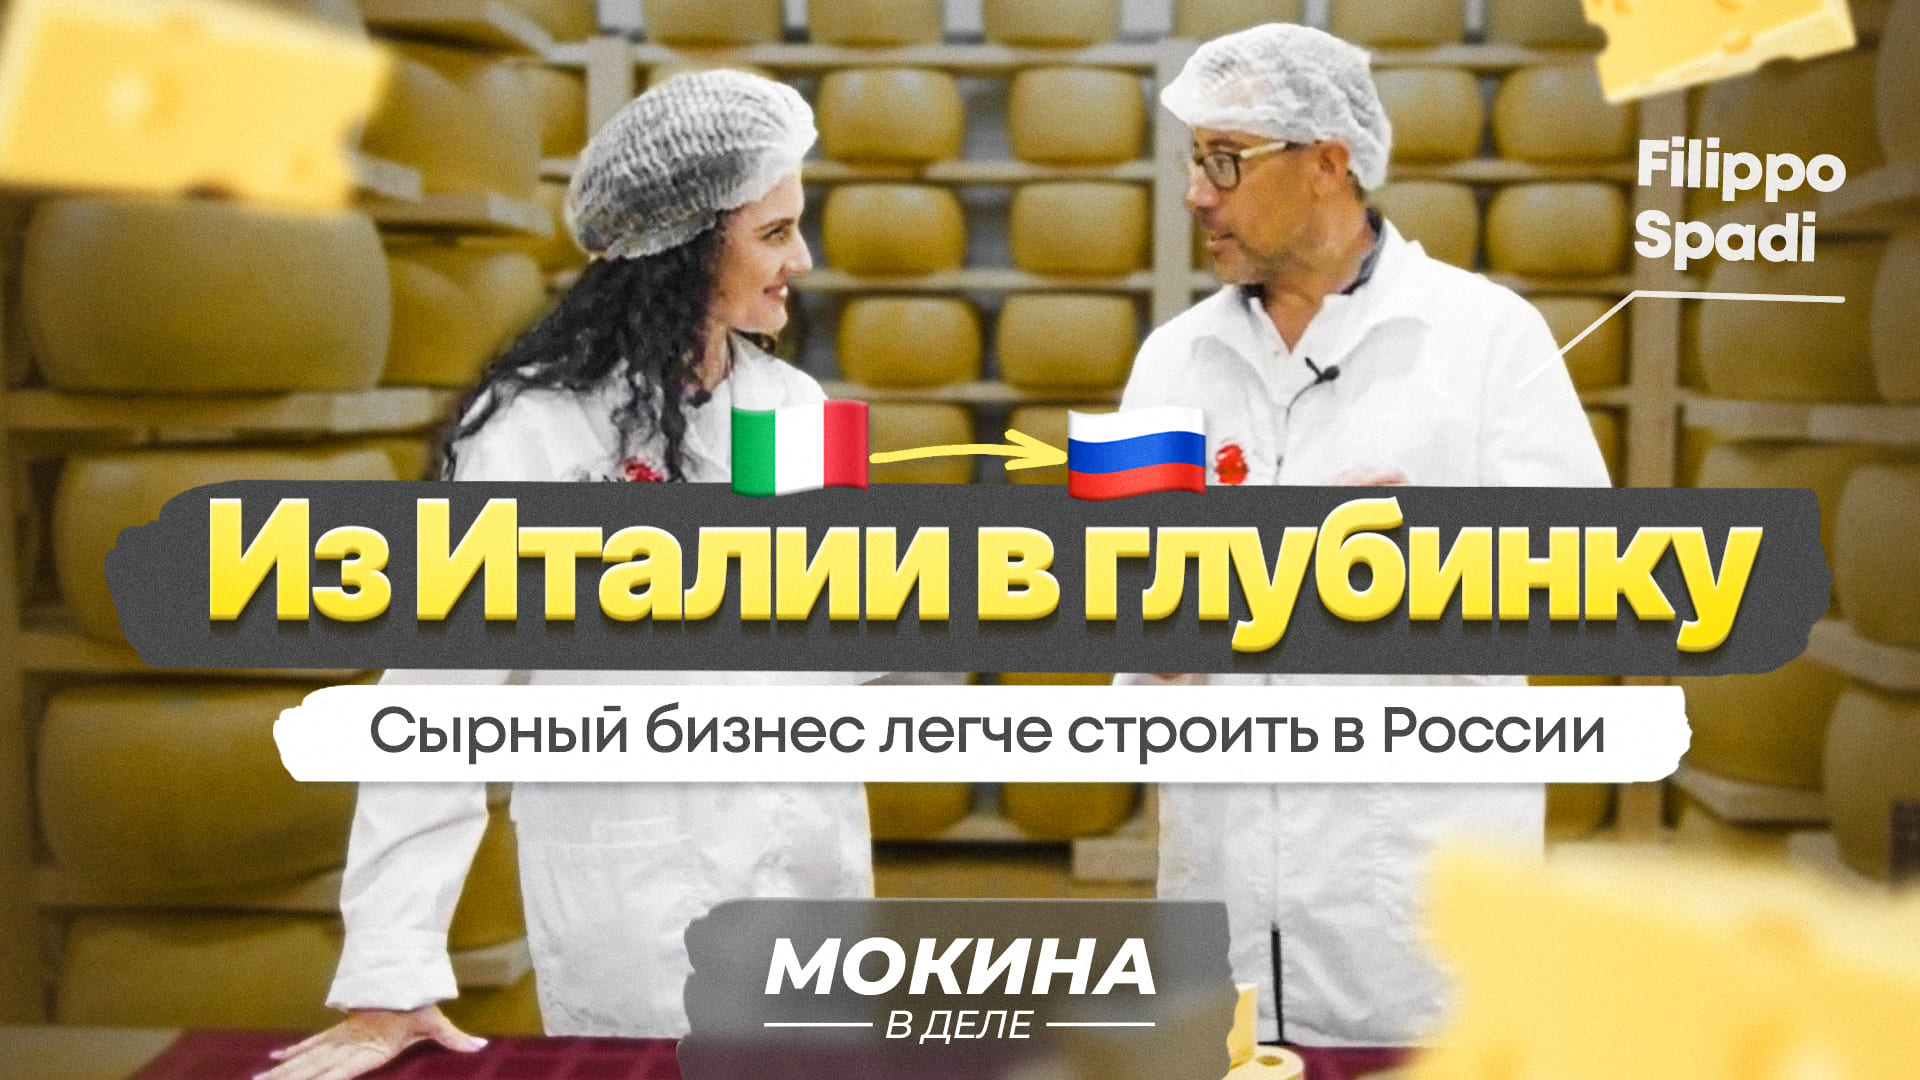 #Мокинавделе. Grand Vyatka: делать бизнес в России проще, чем в Италии!